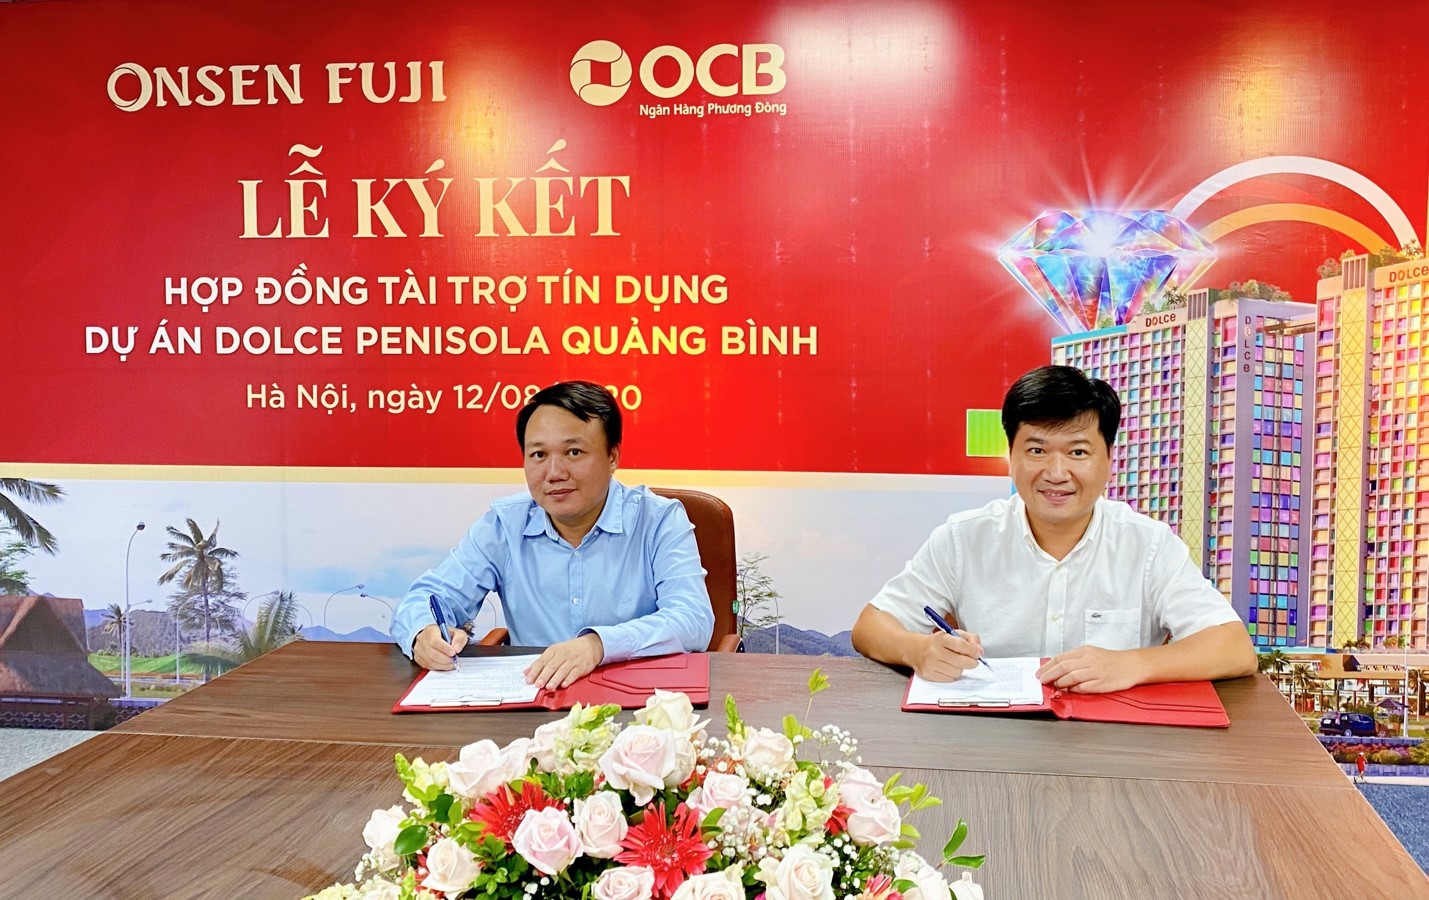 Onsen Fuji và Ngân hàng OCB chính thức ký kết hợp đồng tài trợ tín dụng cho dự án Dolce Penisola Quảng Bình